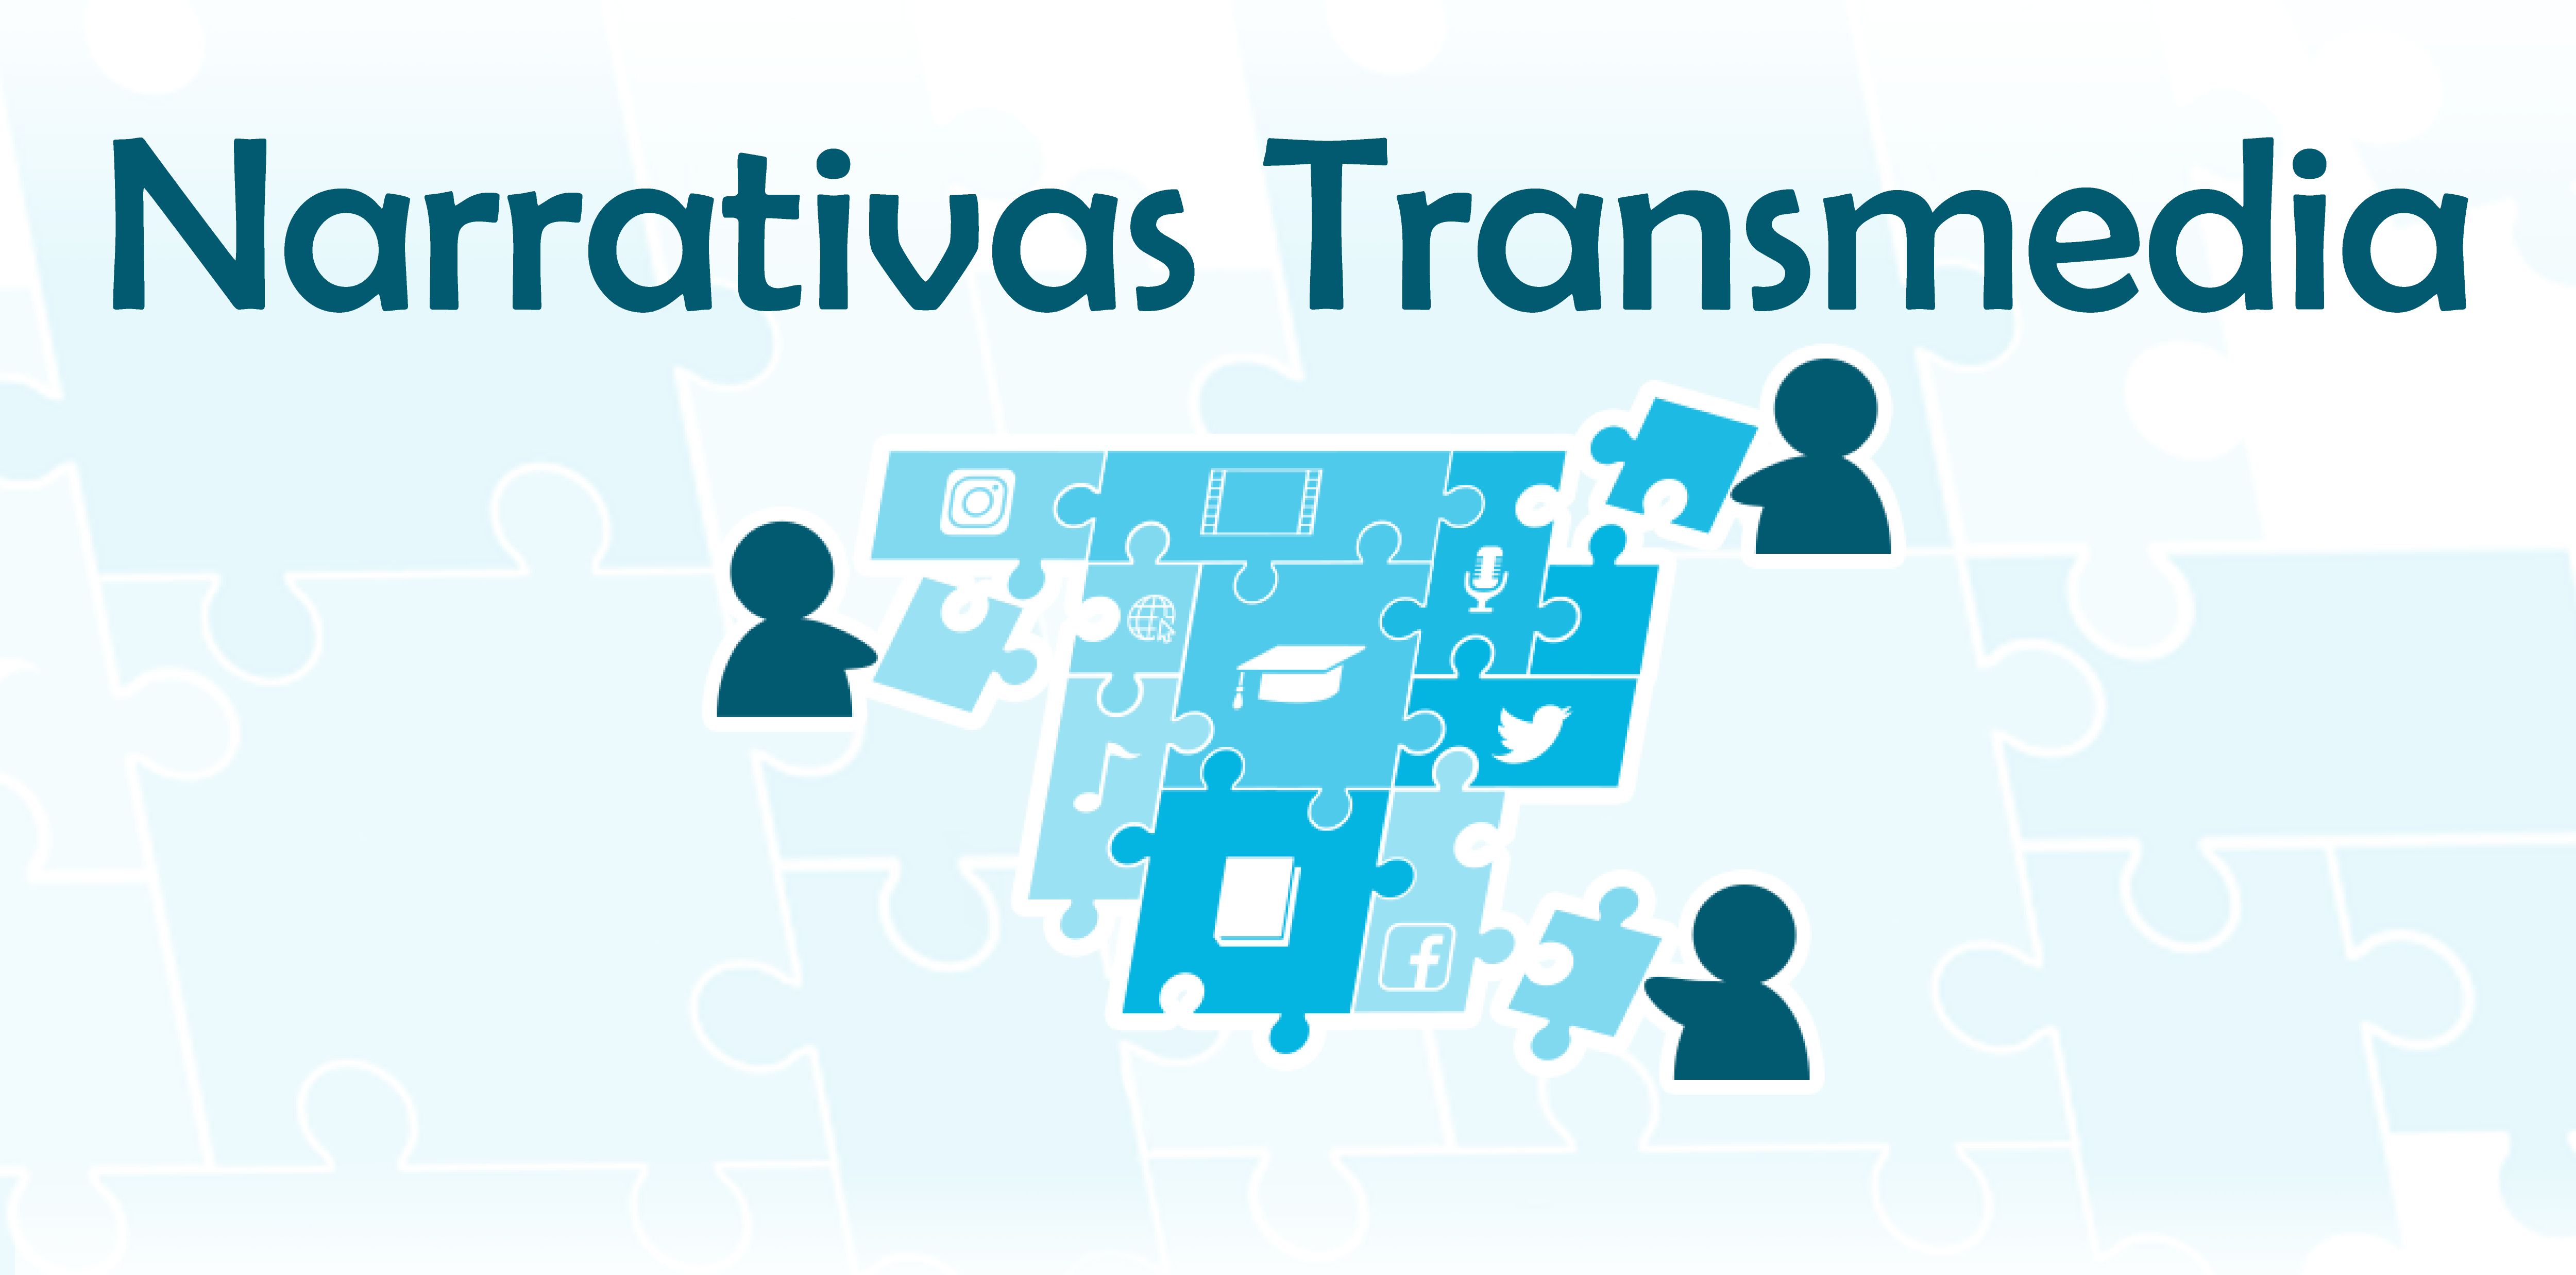 Imagen del logo de Narrativa Transmedia